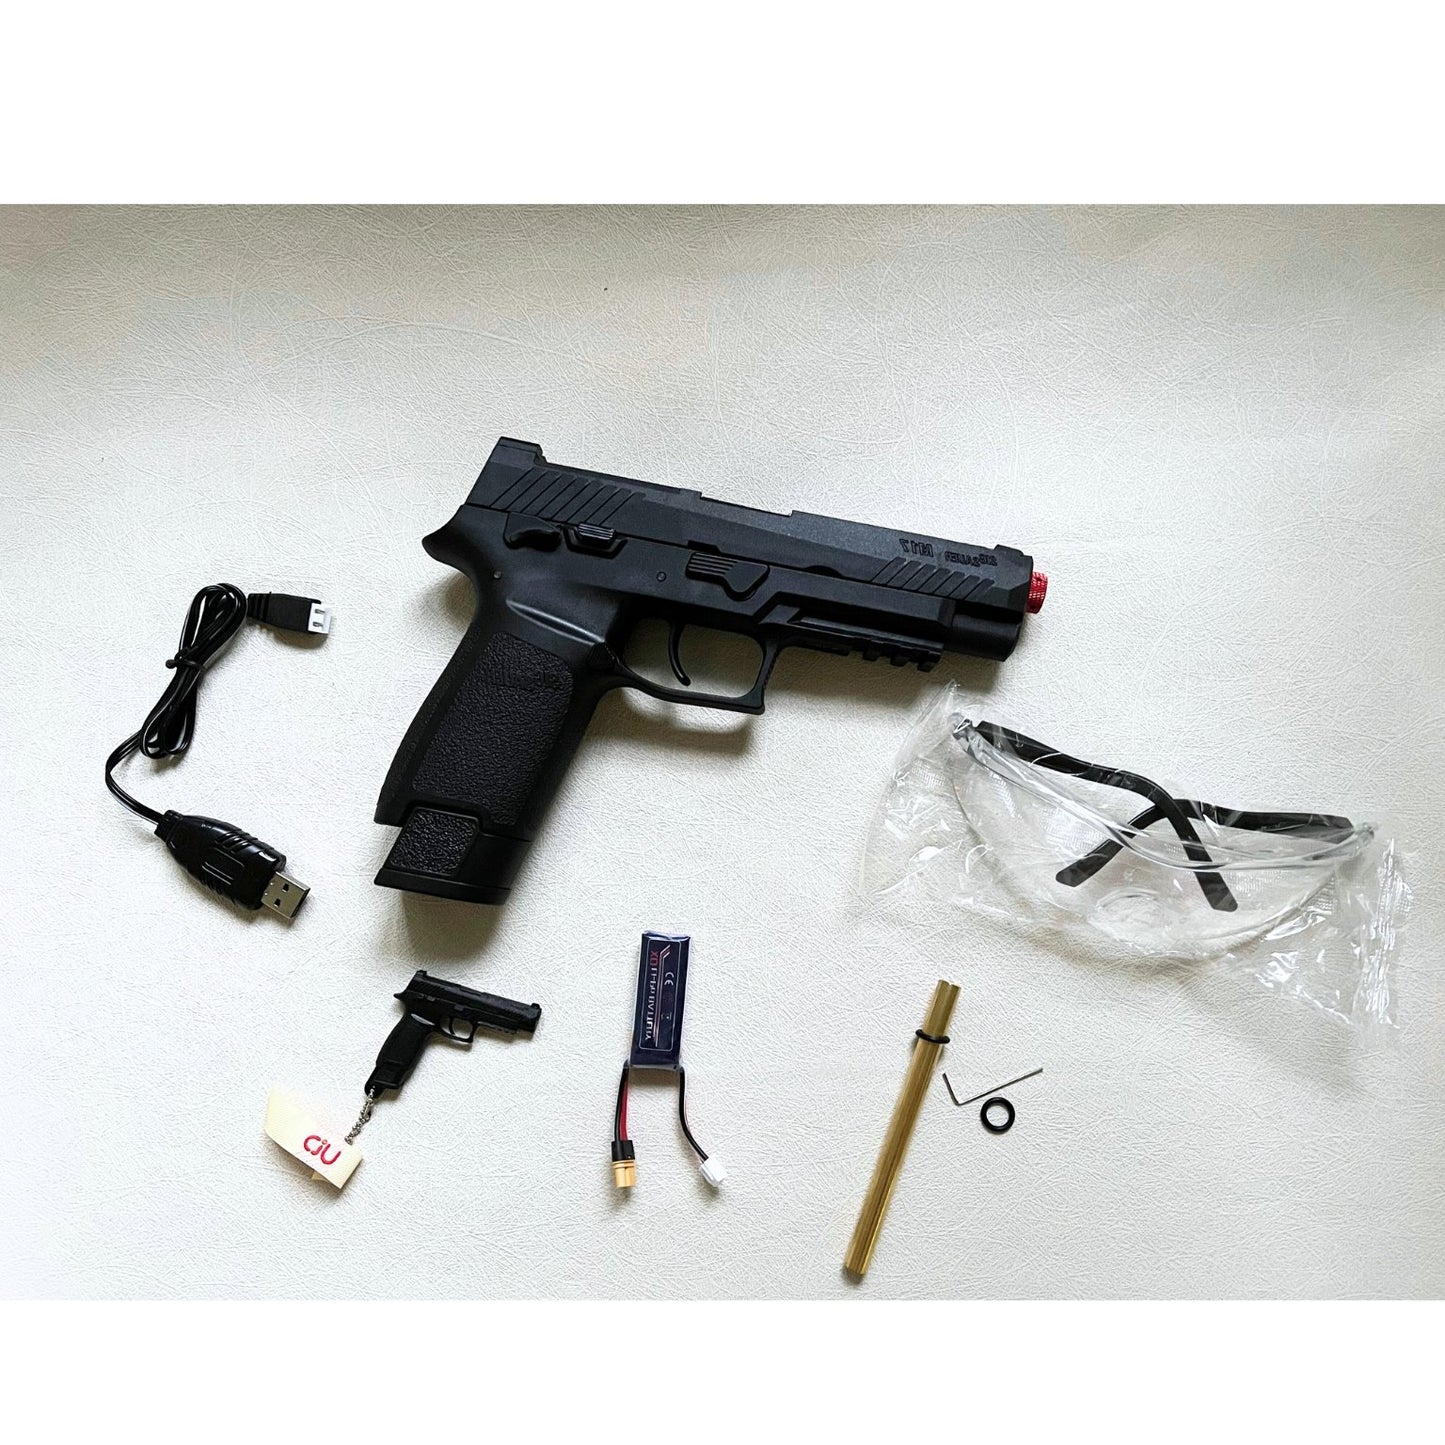 UDL SIG SAUER P320 M17 Pistol Gel Blaster - AKgelblaster